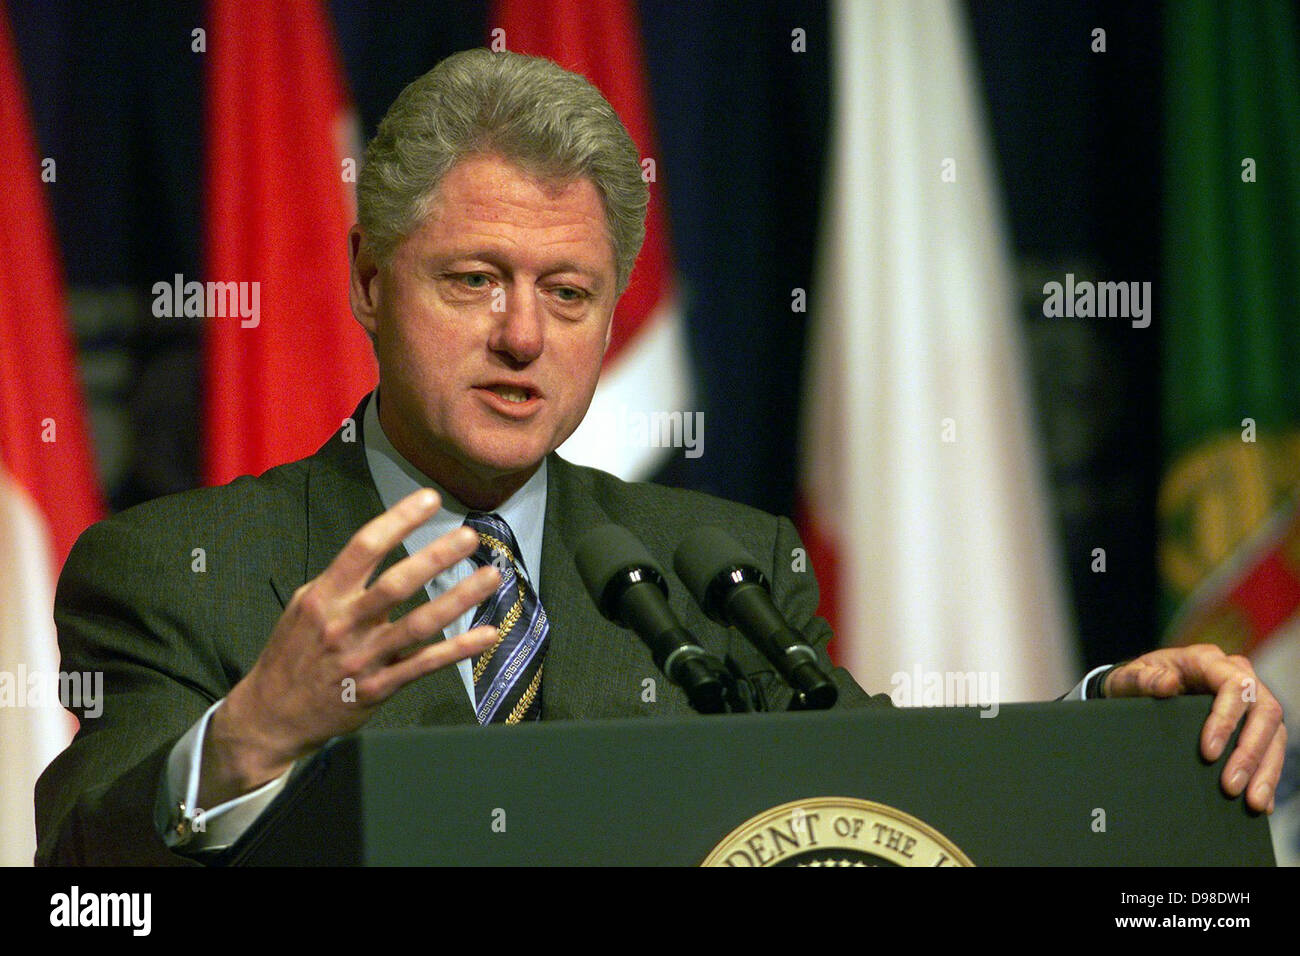 William Jefferson 'Bill Clinton (nato nel 1946) 42° Presidente degli Stati Uniti d'America 1993-2001, dando una conferenza stampa nell'anfiteatro della ITC Edificio Reagan. Foto Stock